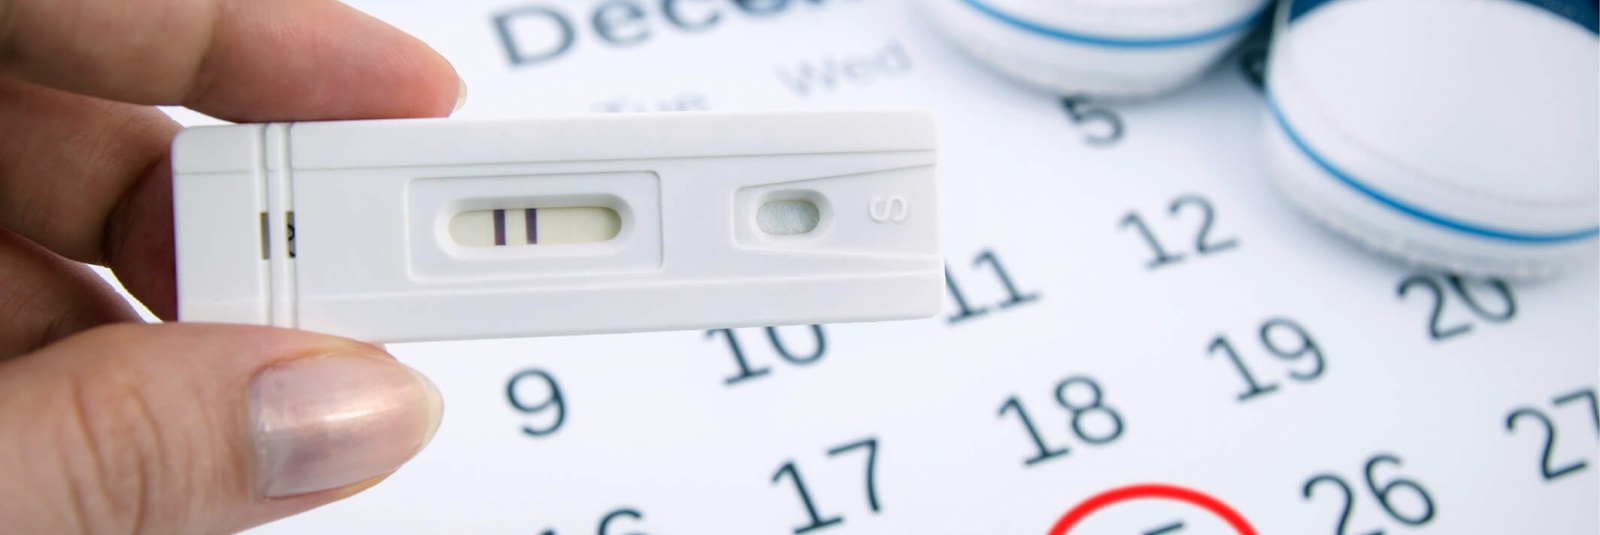 Cand se face testul de sarcina?